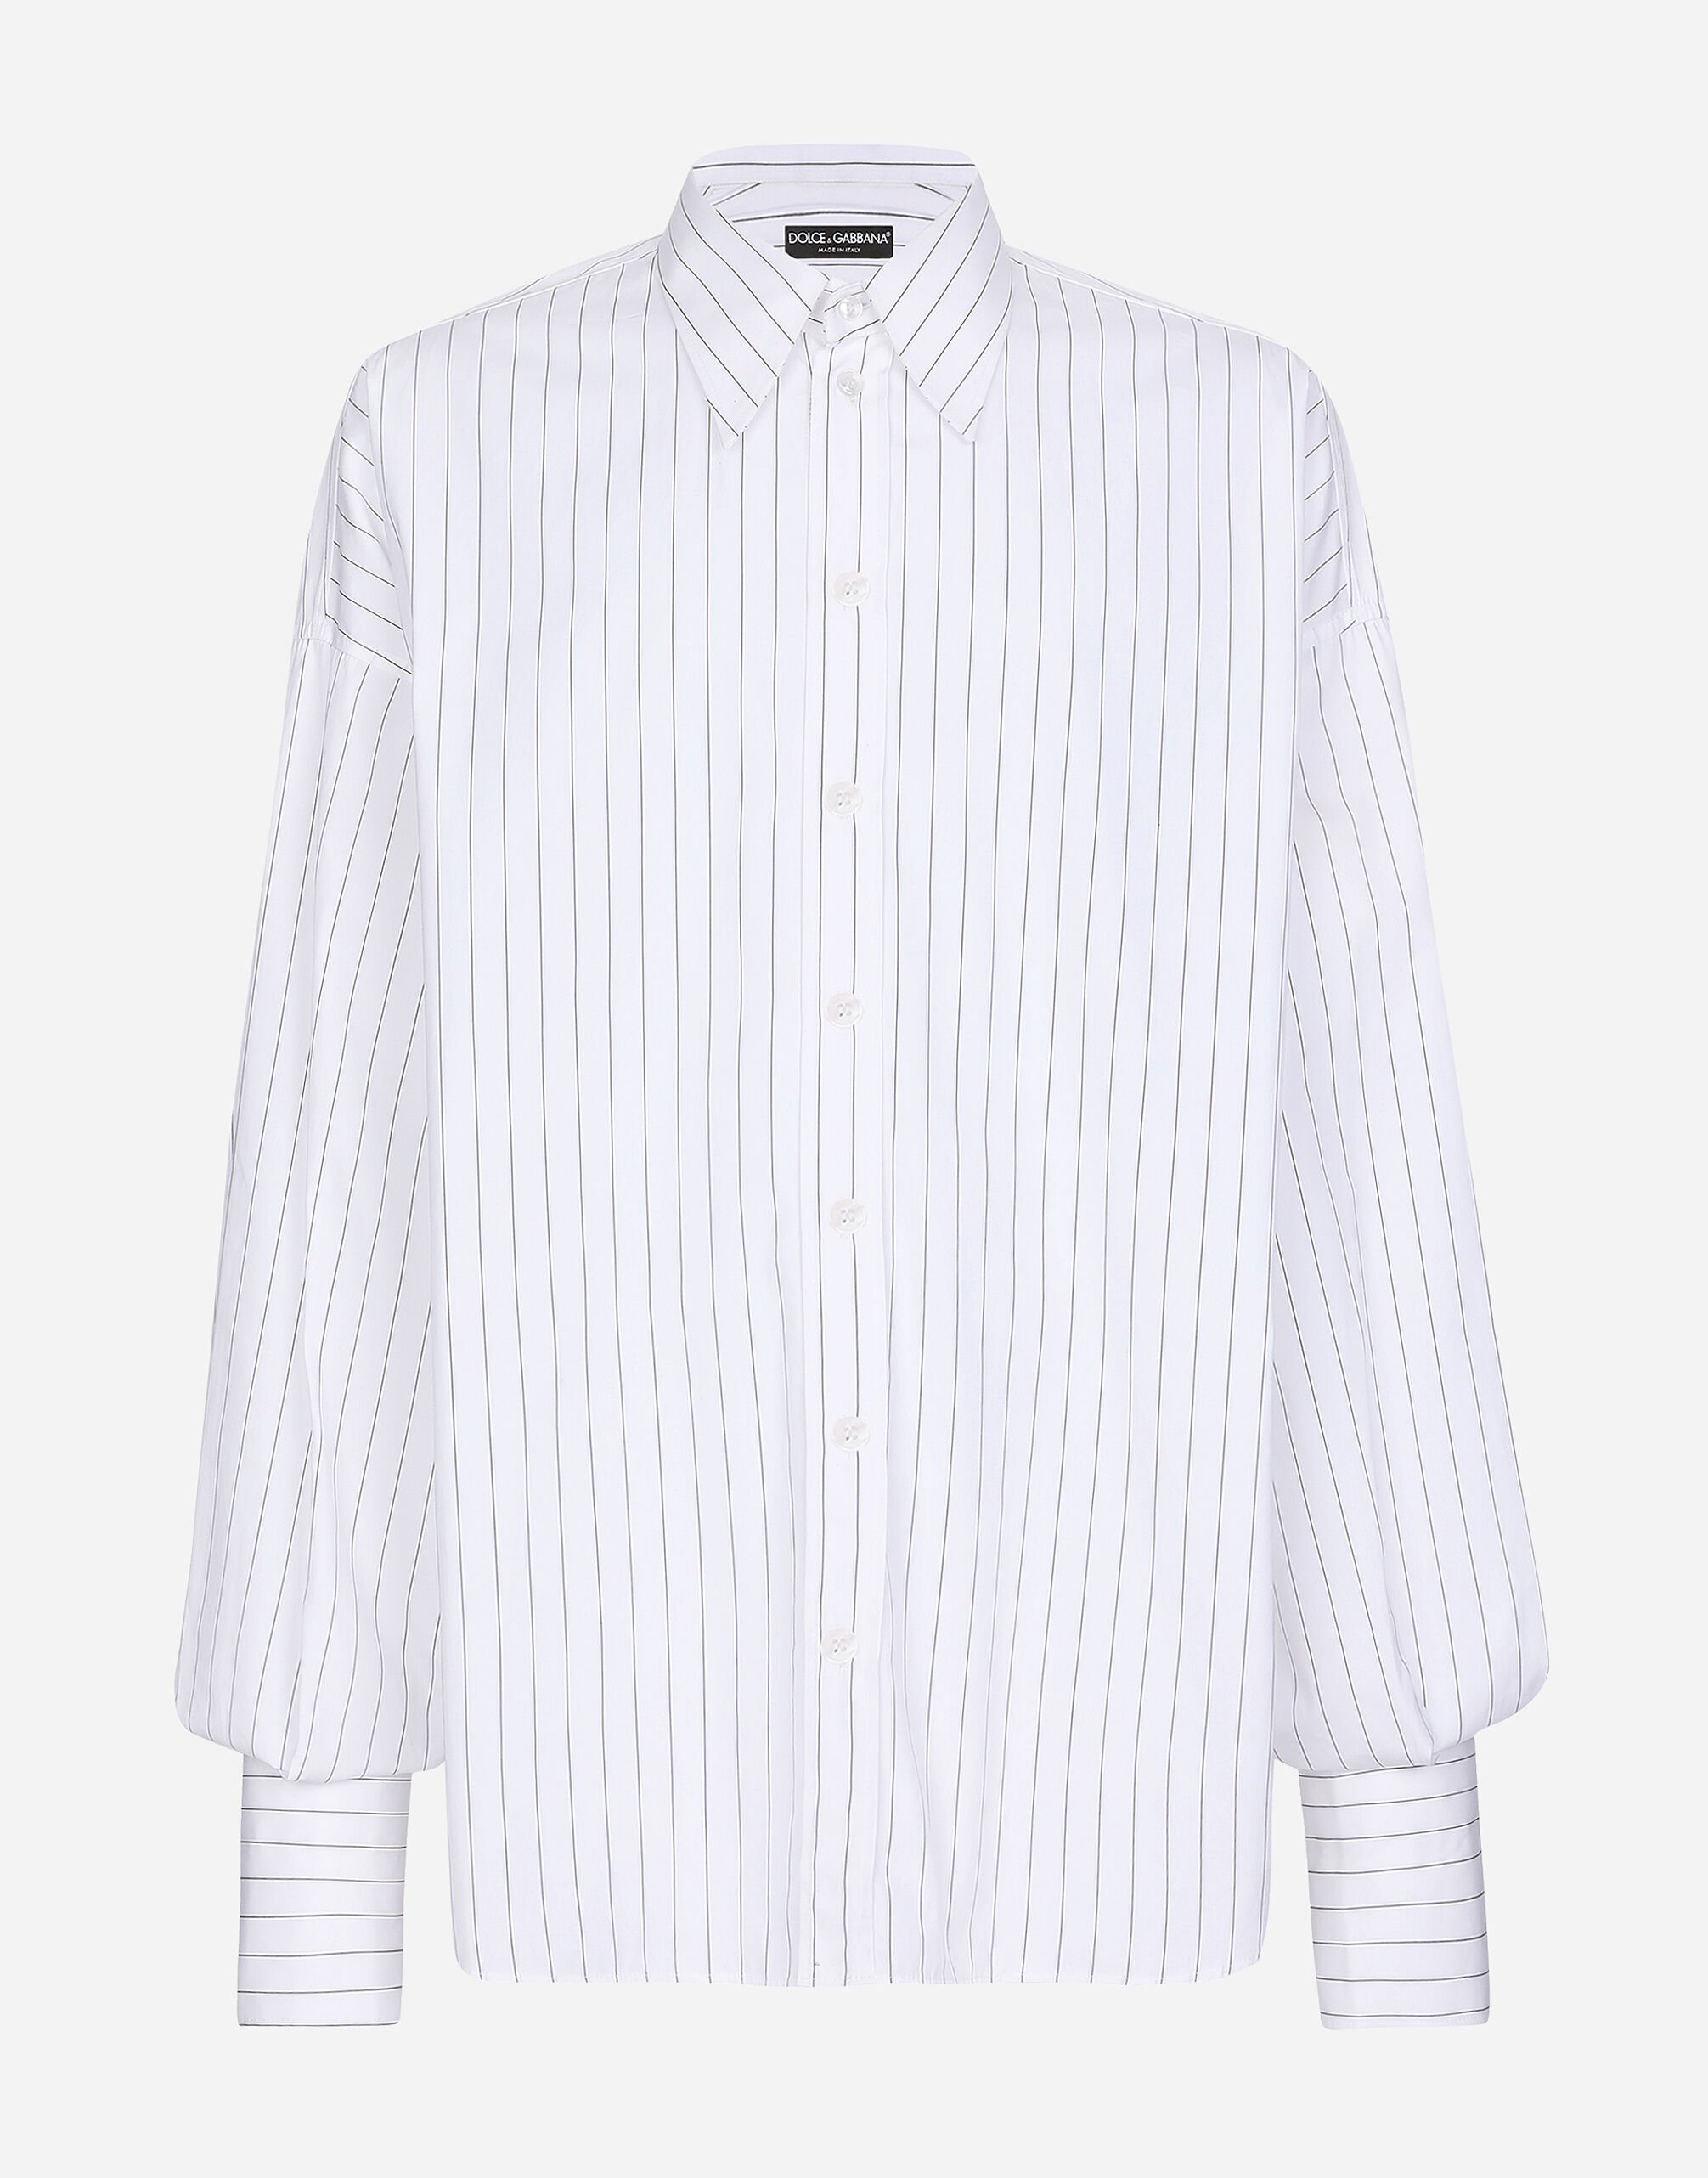 Dolce & Gabbana Super-oversize striped poplin shirt Brown GV1FXTHUMG4